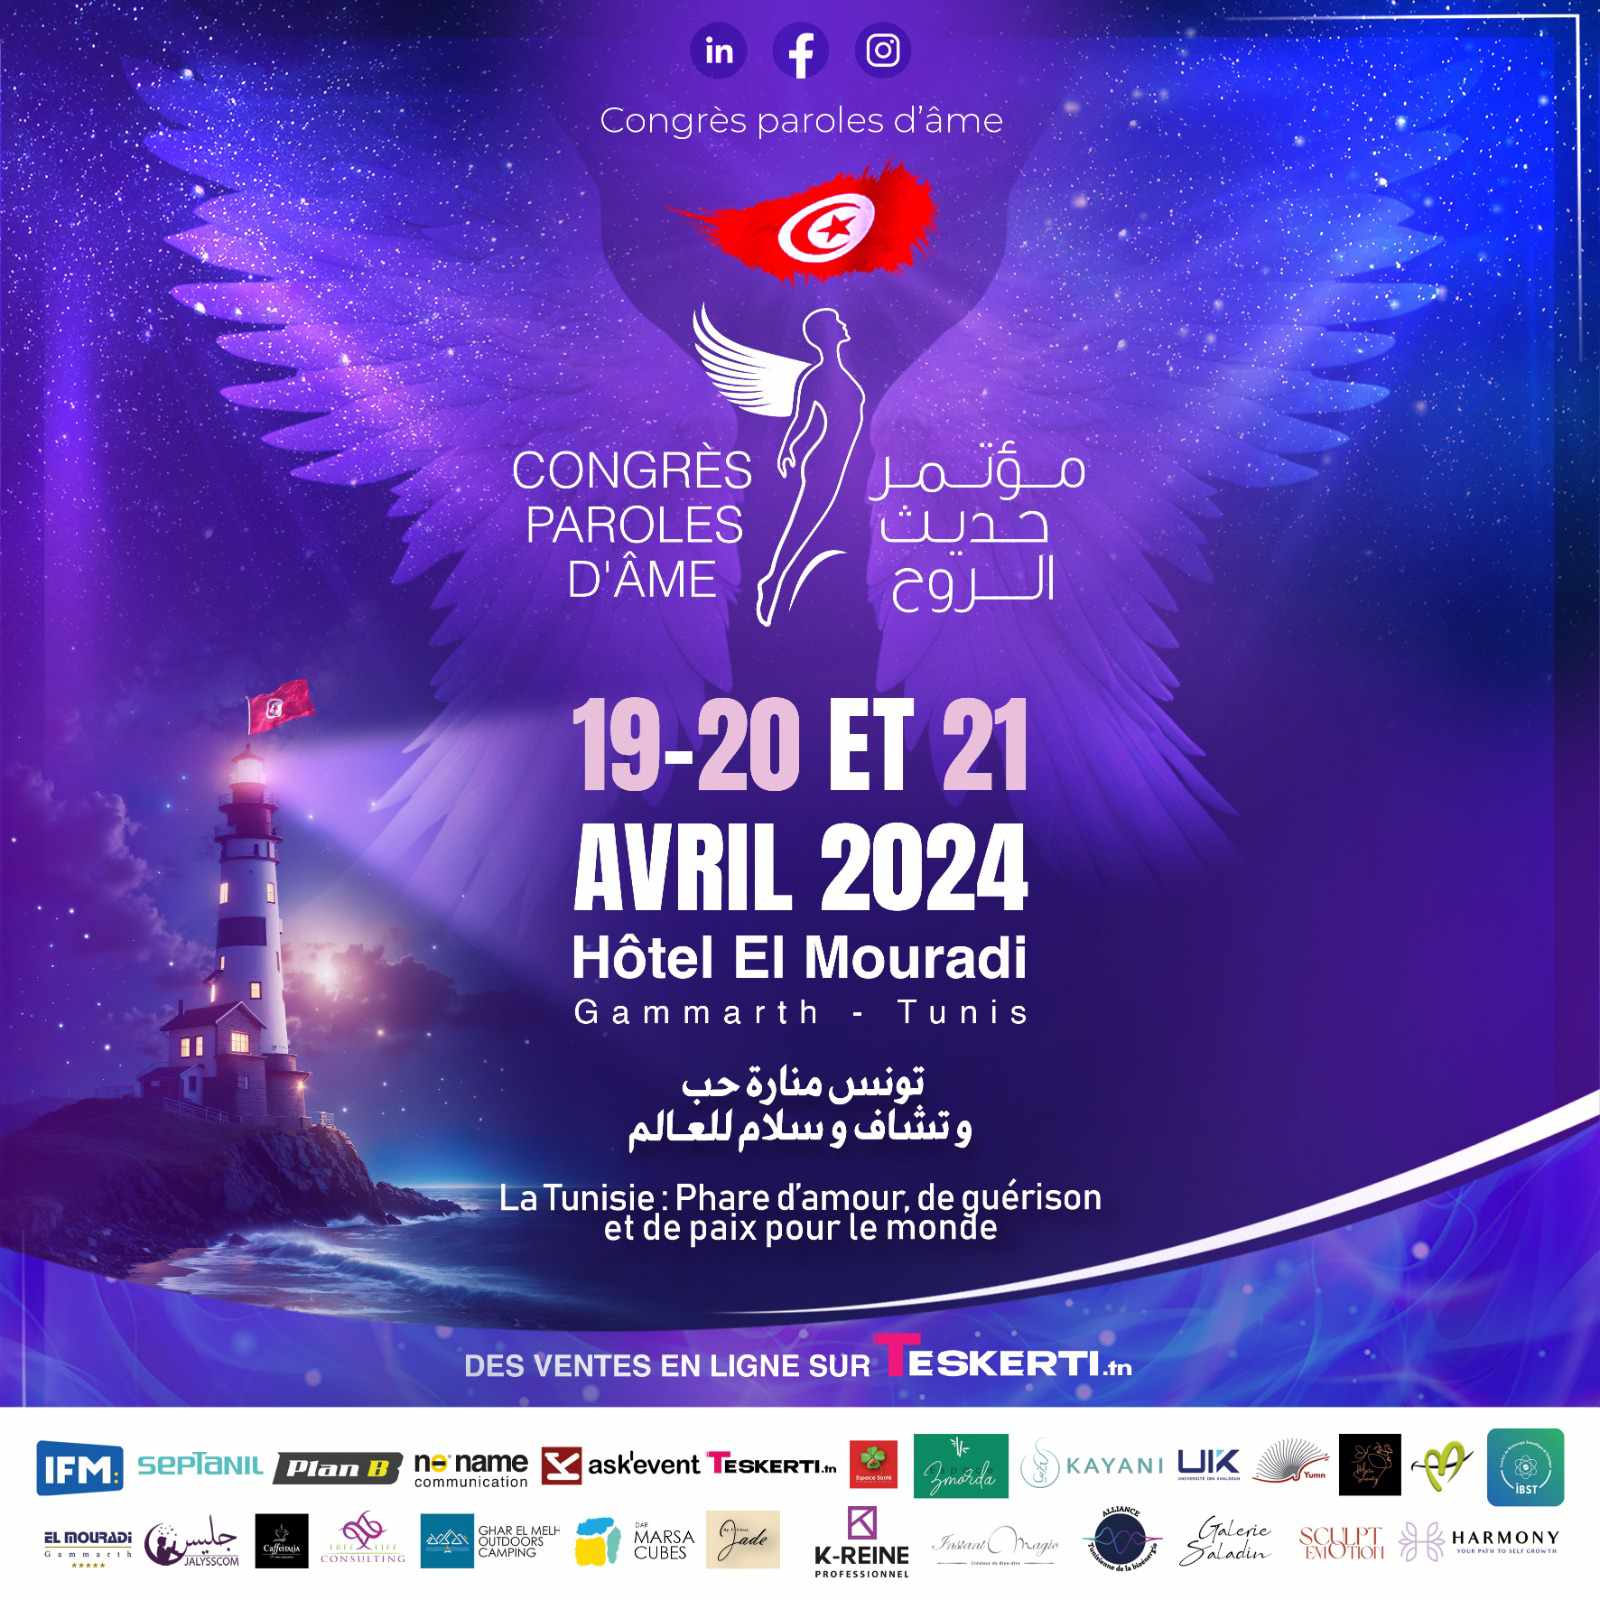 المؤتمر الدولي "حديث الروح": تونس منارة للحب والسلام والتشافي